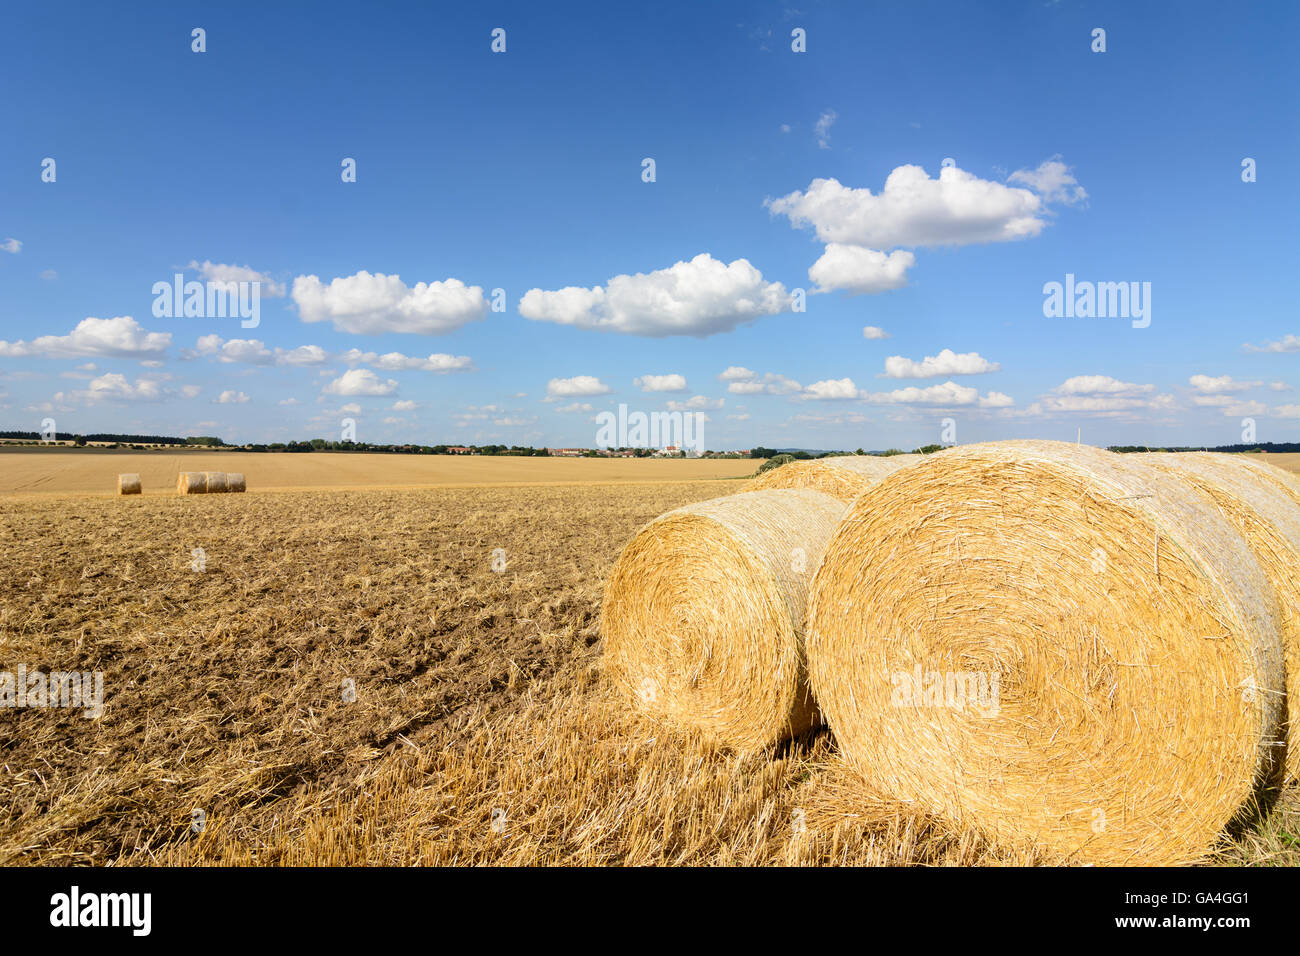 El grano cosechado Drosendorf-Zissersdorf campos con fardos de paja, Niederösterreich Austria Austria Inferior Waldviertel Foto de stock